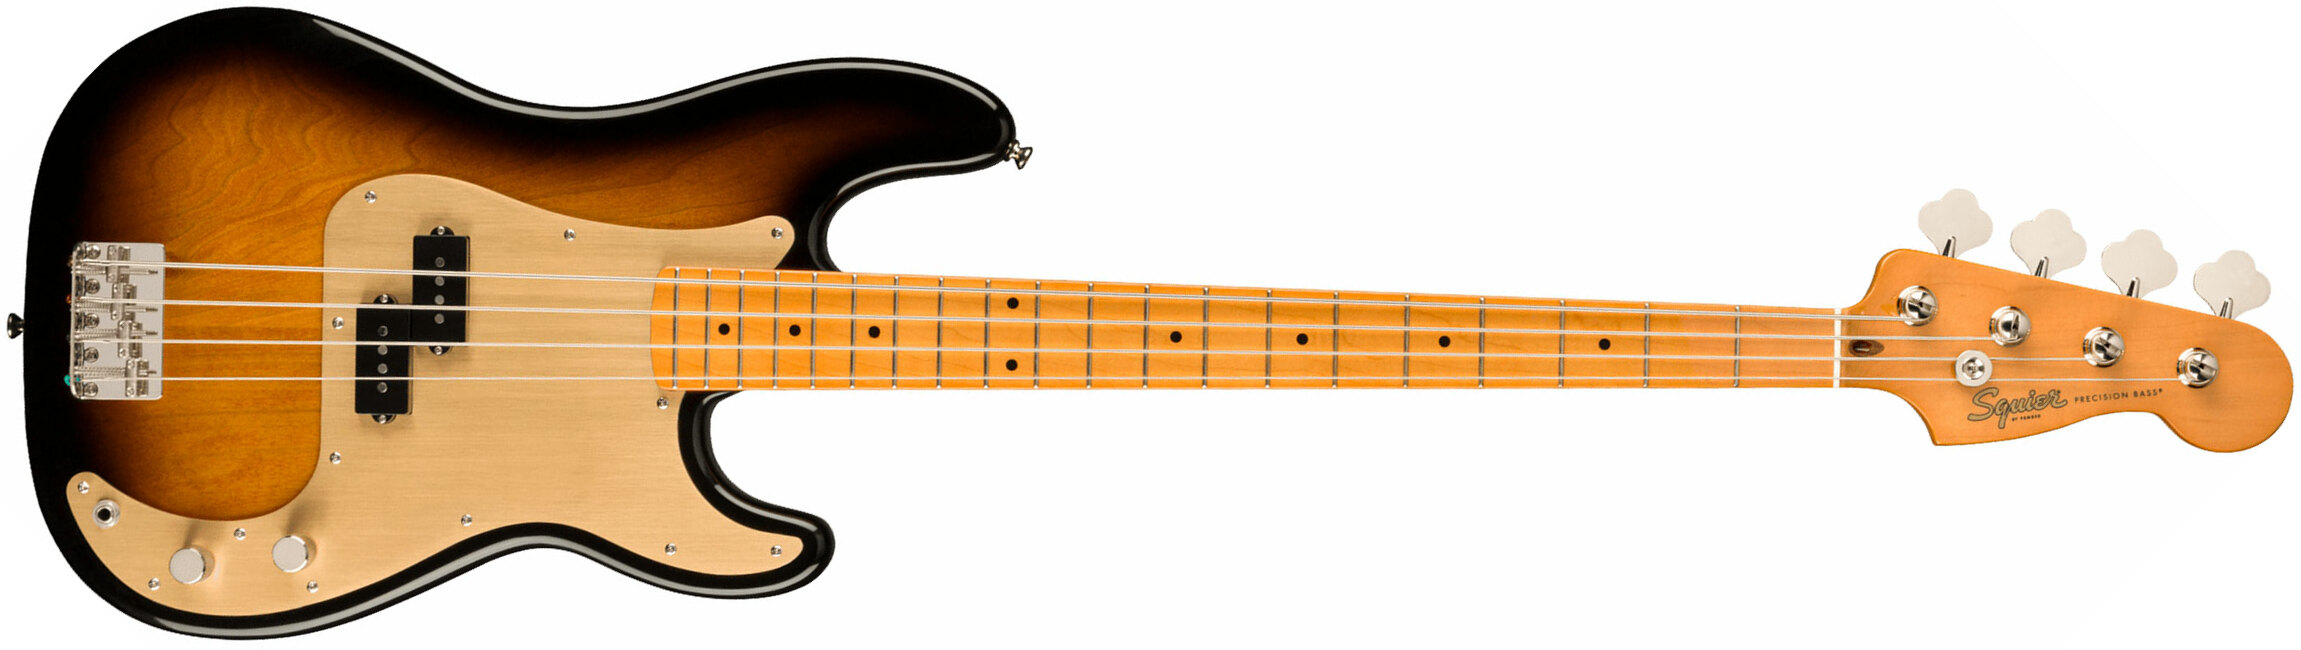 Squier Precision Bass Late '50s Classic Vibe Fsr Ltd Mn - 2-color Sunburst - Solid body elektrische bas - Main picture